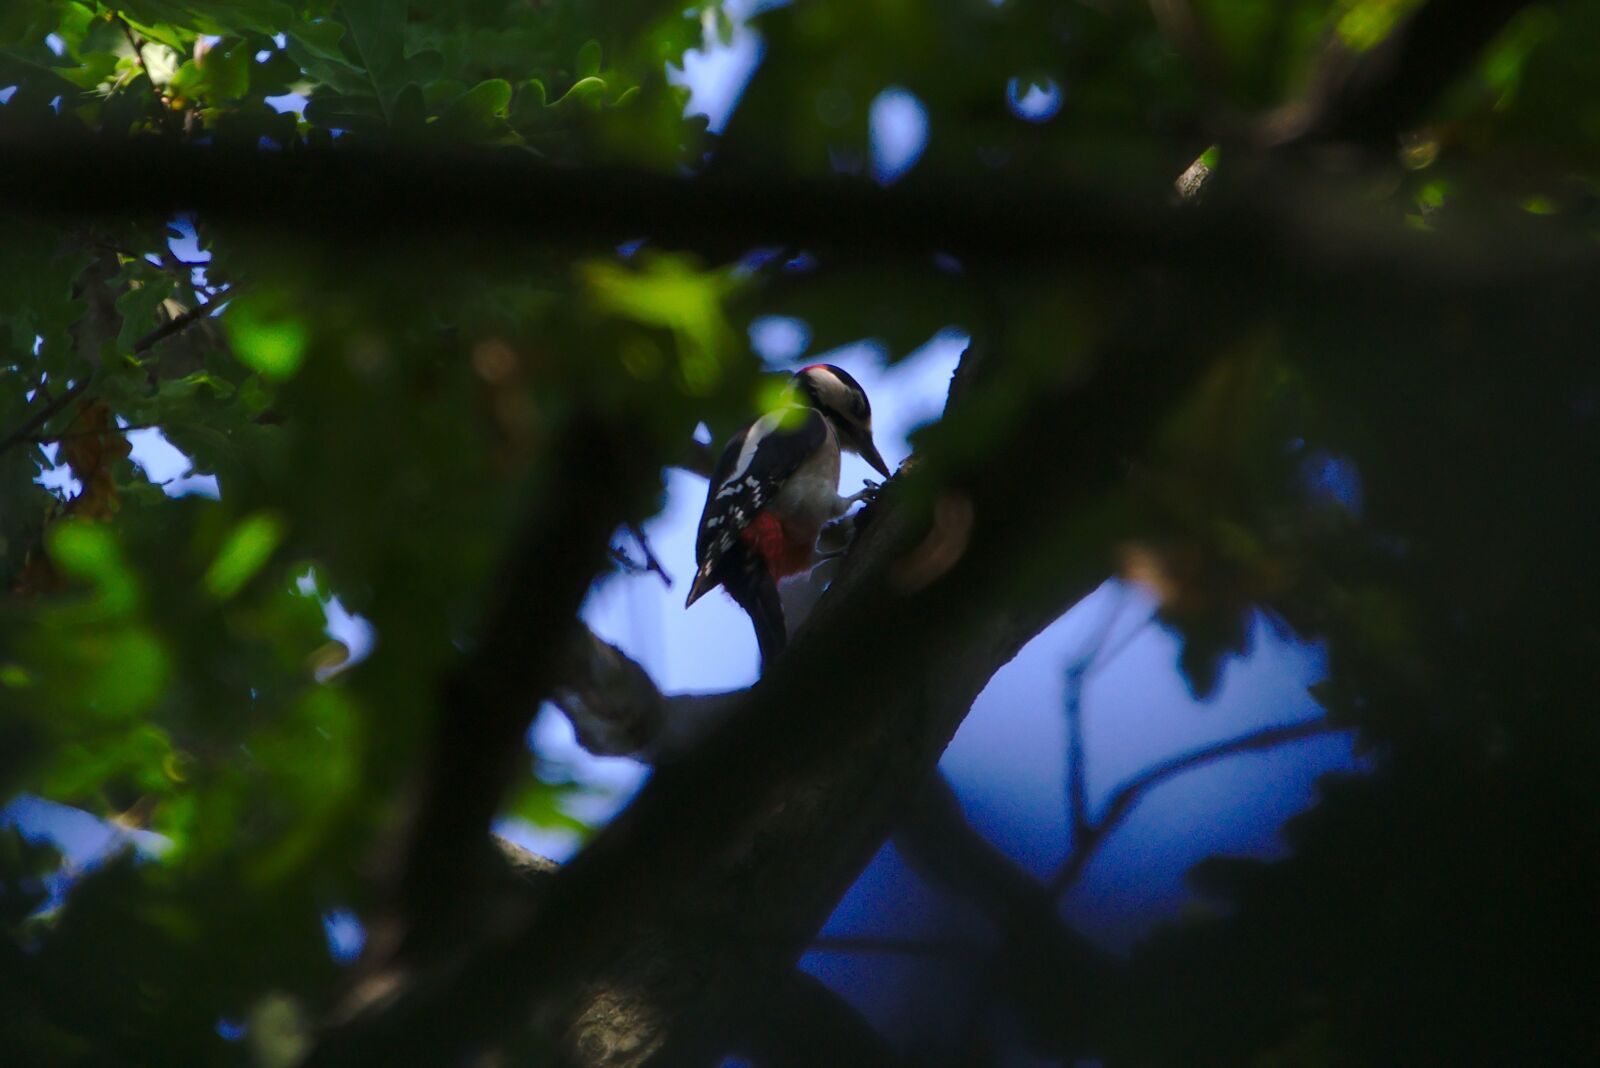 Sony FE 70-300mm F4.5-5.6 G OSS sample photo. Bird, woodpecker, tree photography